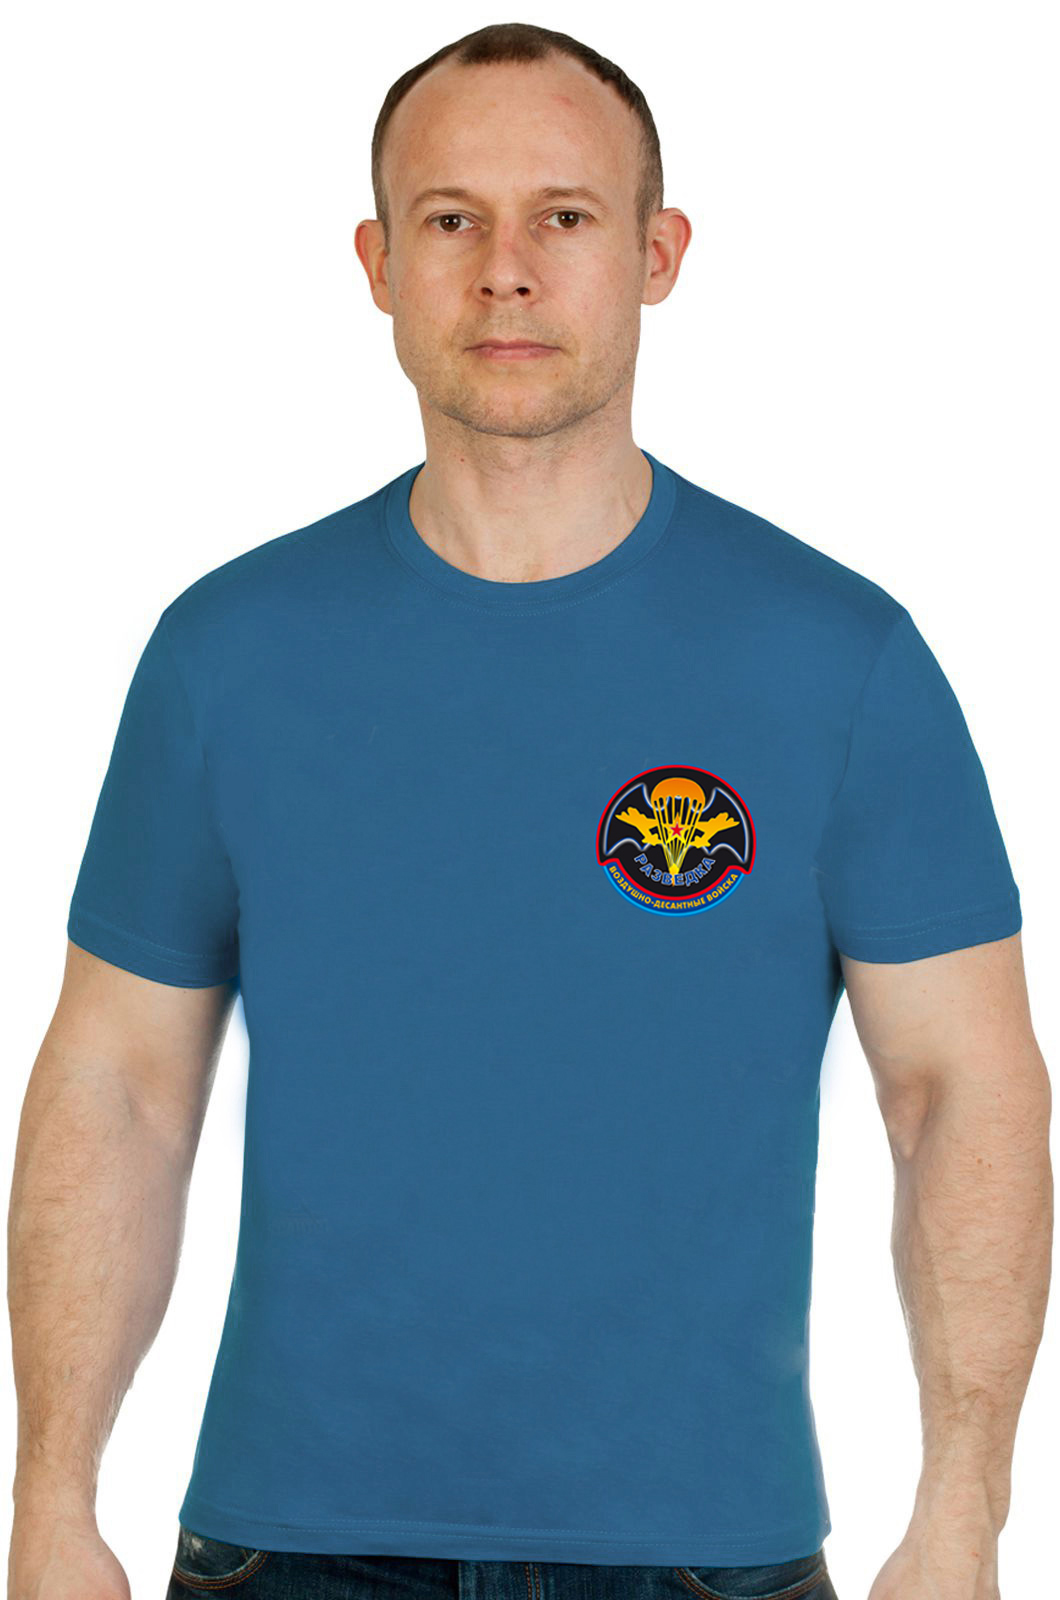 Бирюзовая футболка "Разведка Воздушно-десантных войск" 